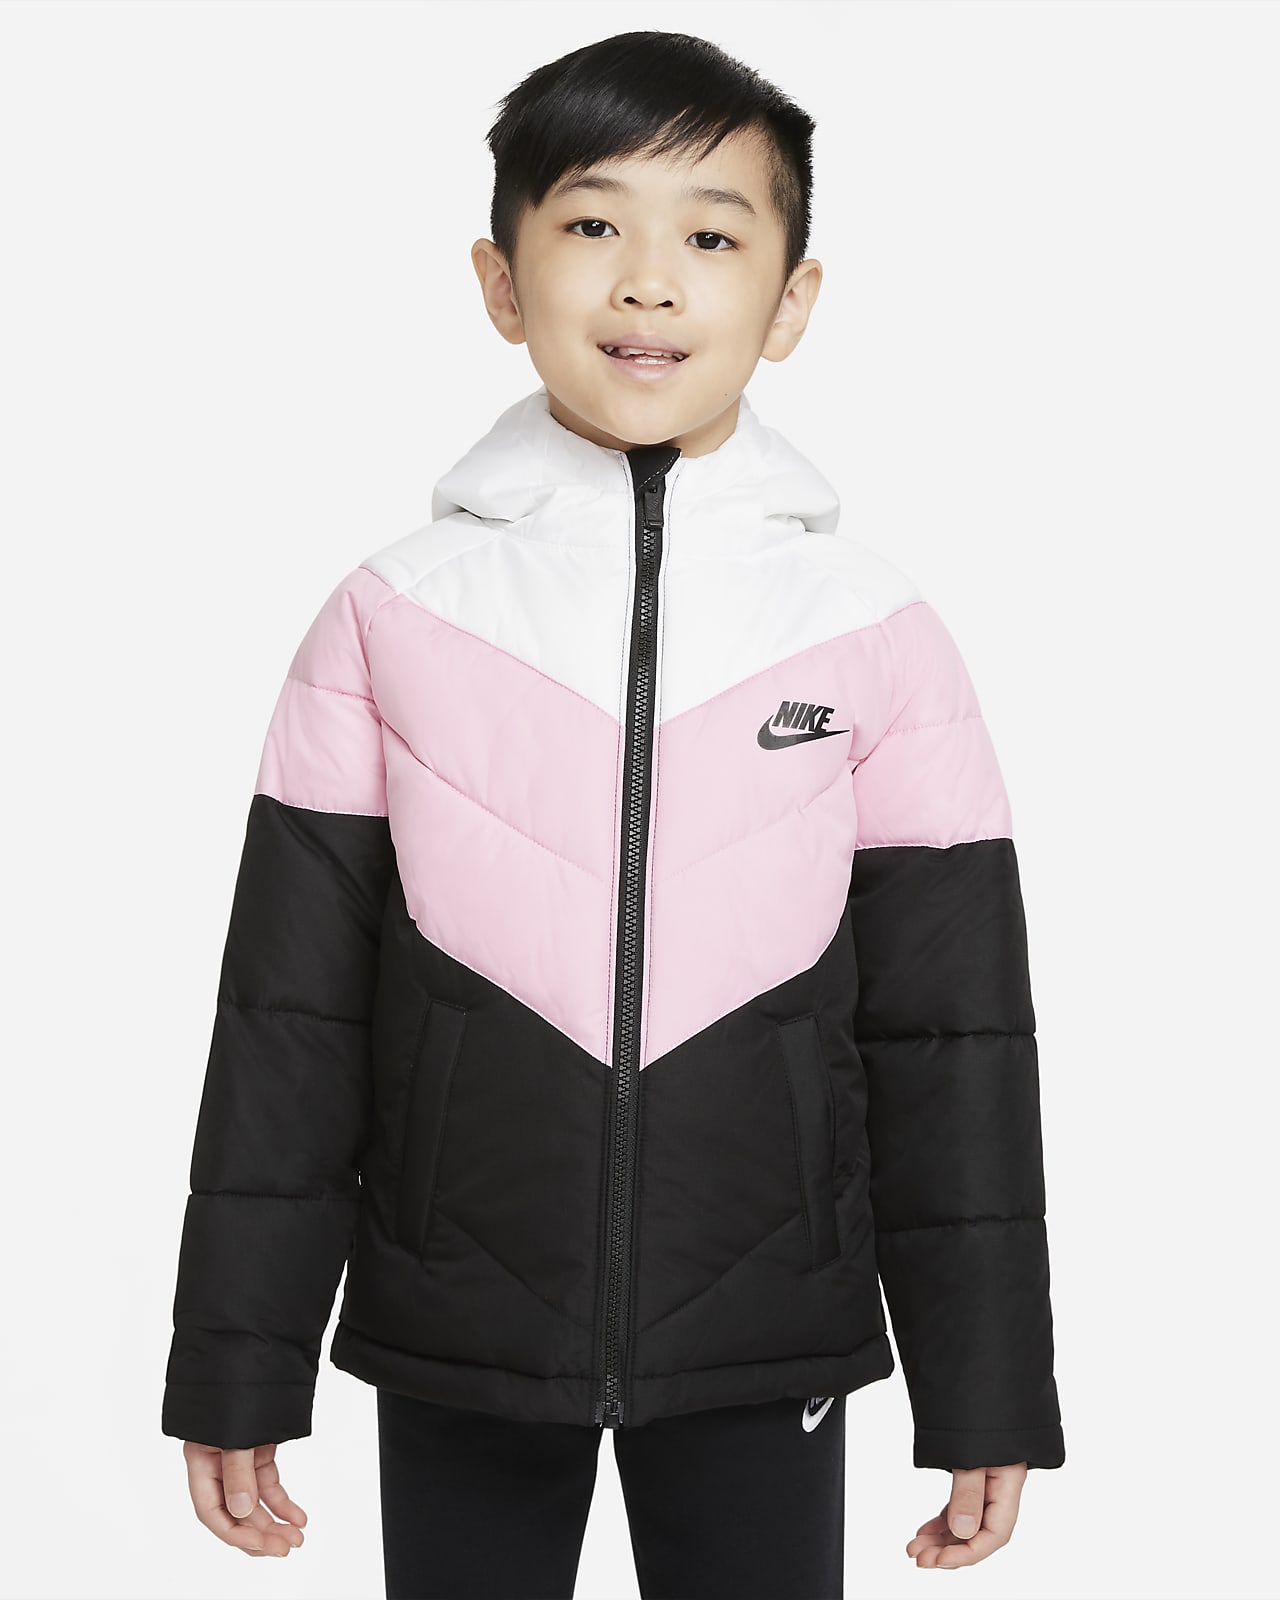 Nike Sportswear pufi kabát gyerekeknek